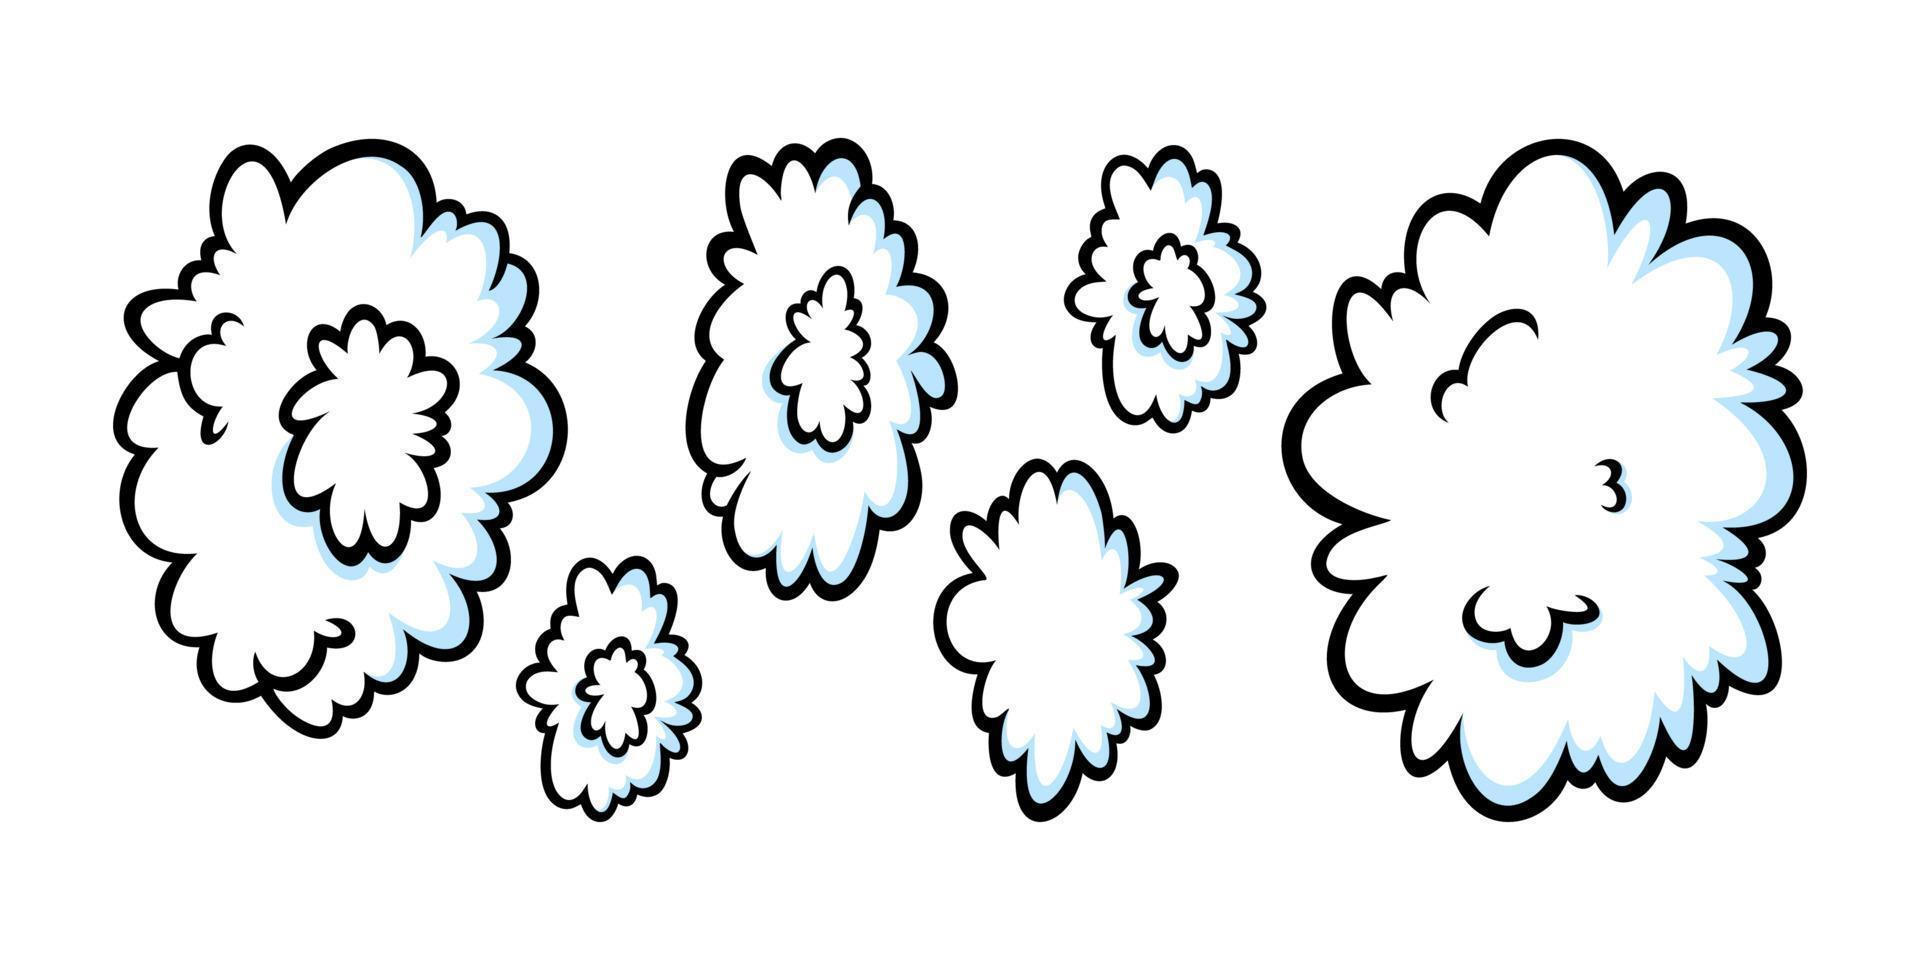 anneaux de vapeur dans un style comique. rangée croissante de nuages ronds de vapeur ou de fumée pour cigare, cigarette ou mouvement rapide. illustration vectorielle vecteur